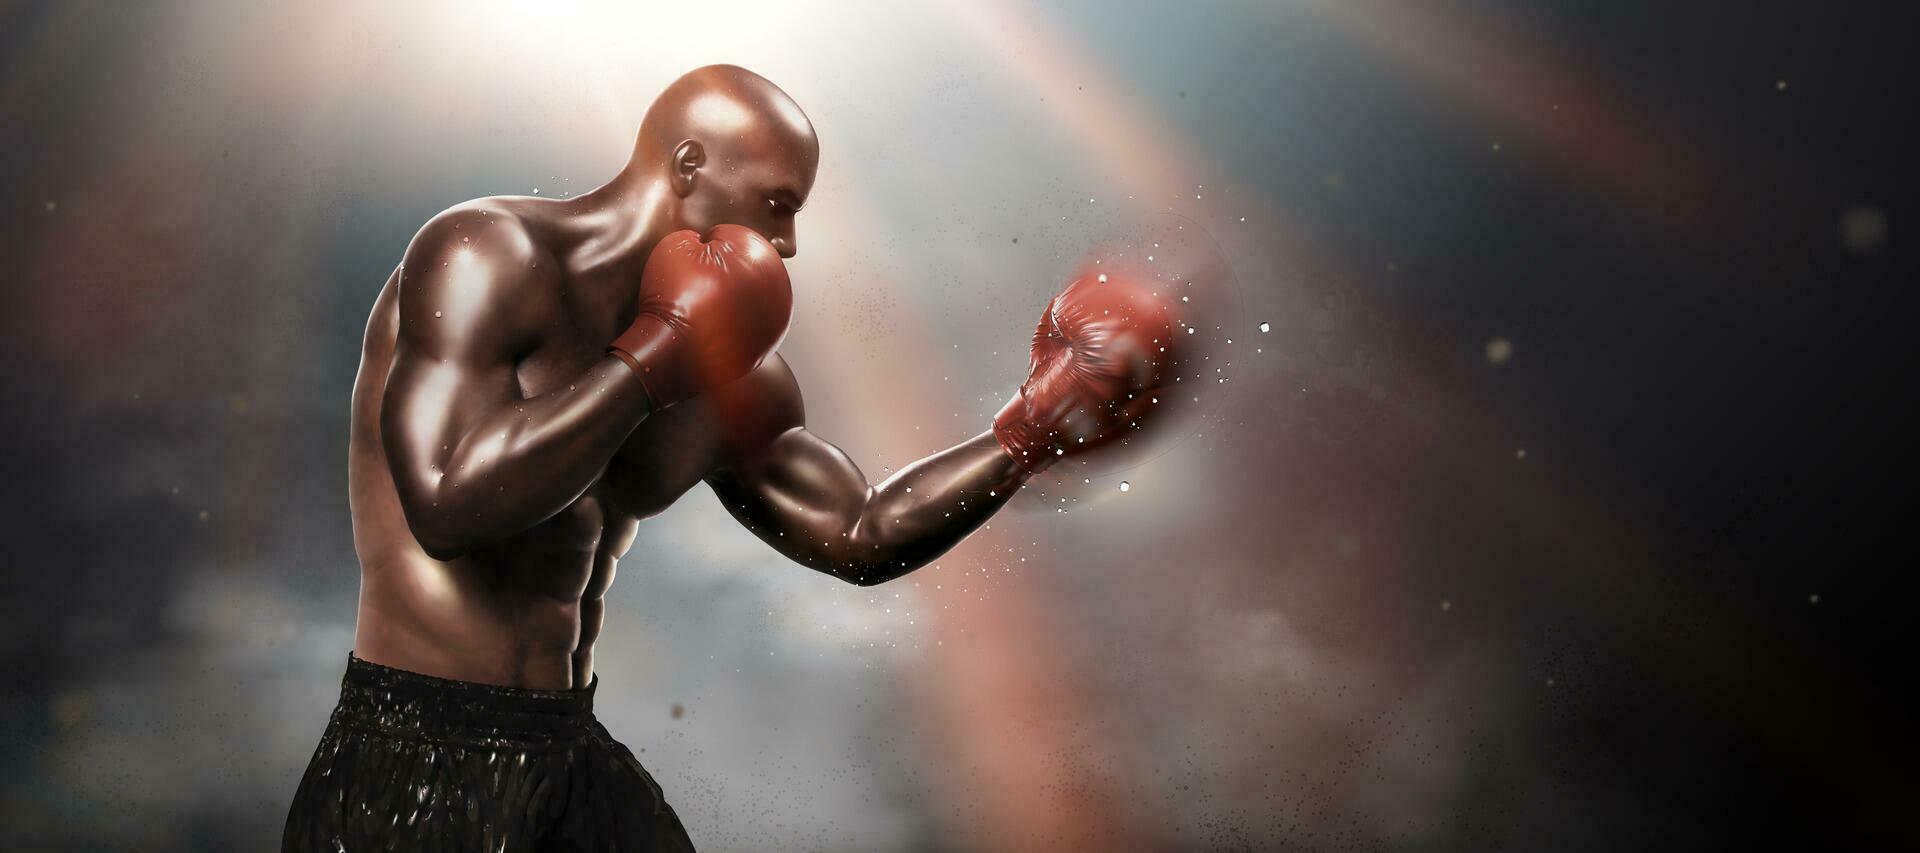 sterk bokser het werpen een haak in 3d illustratie, bokeh achtergrond vector